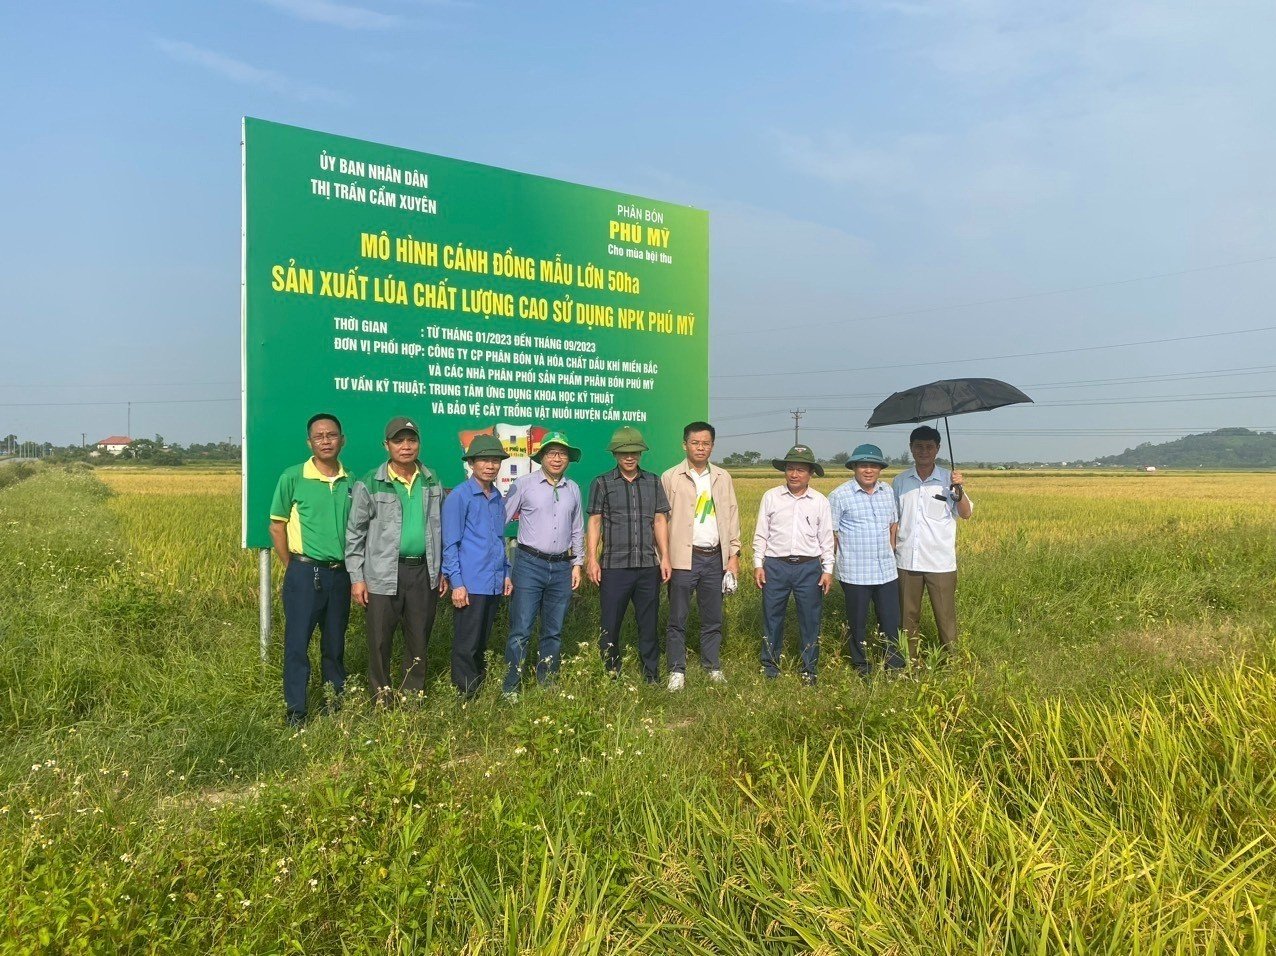 Hội thảo tổng kết Mô hình cánh đồng mẫu lớn sản xuất lúa chất lượng cao sử dụng phân bón NPK Phú Mỹ trong vụ Xuân năm 2023